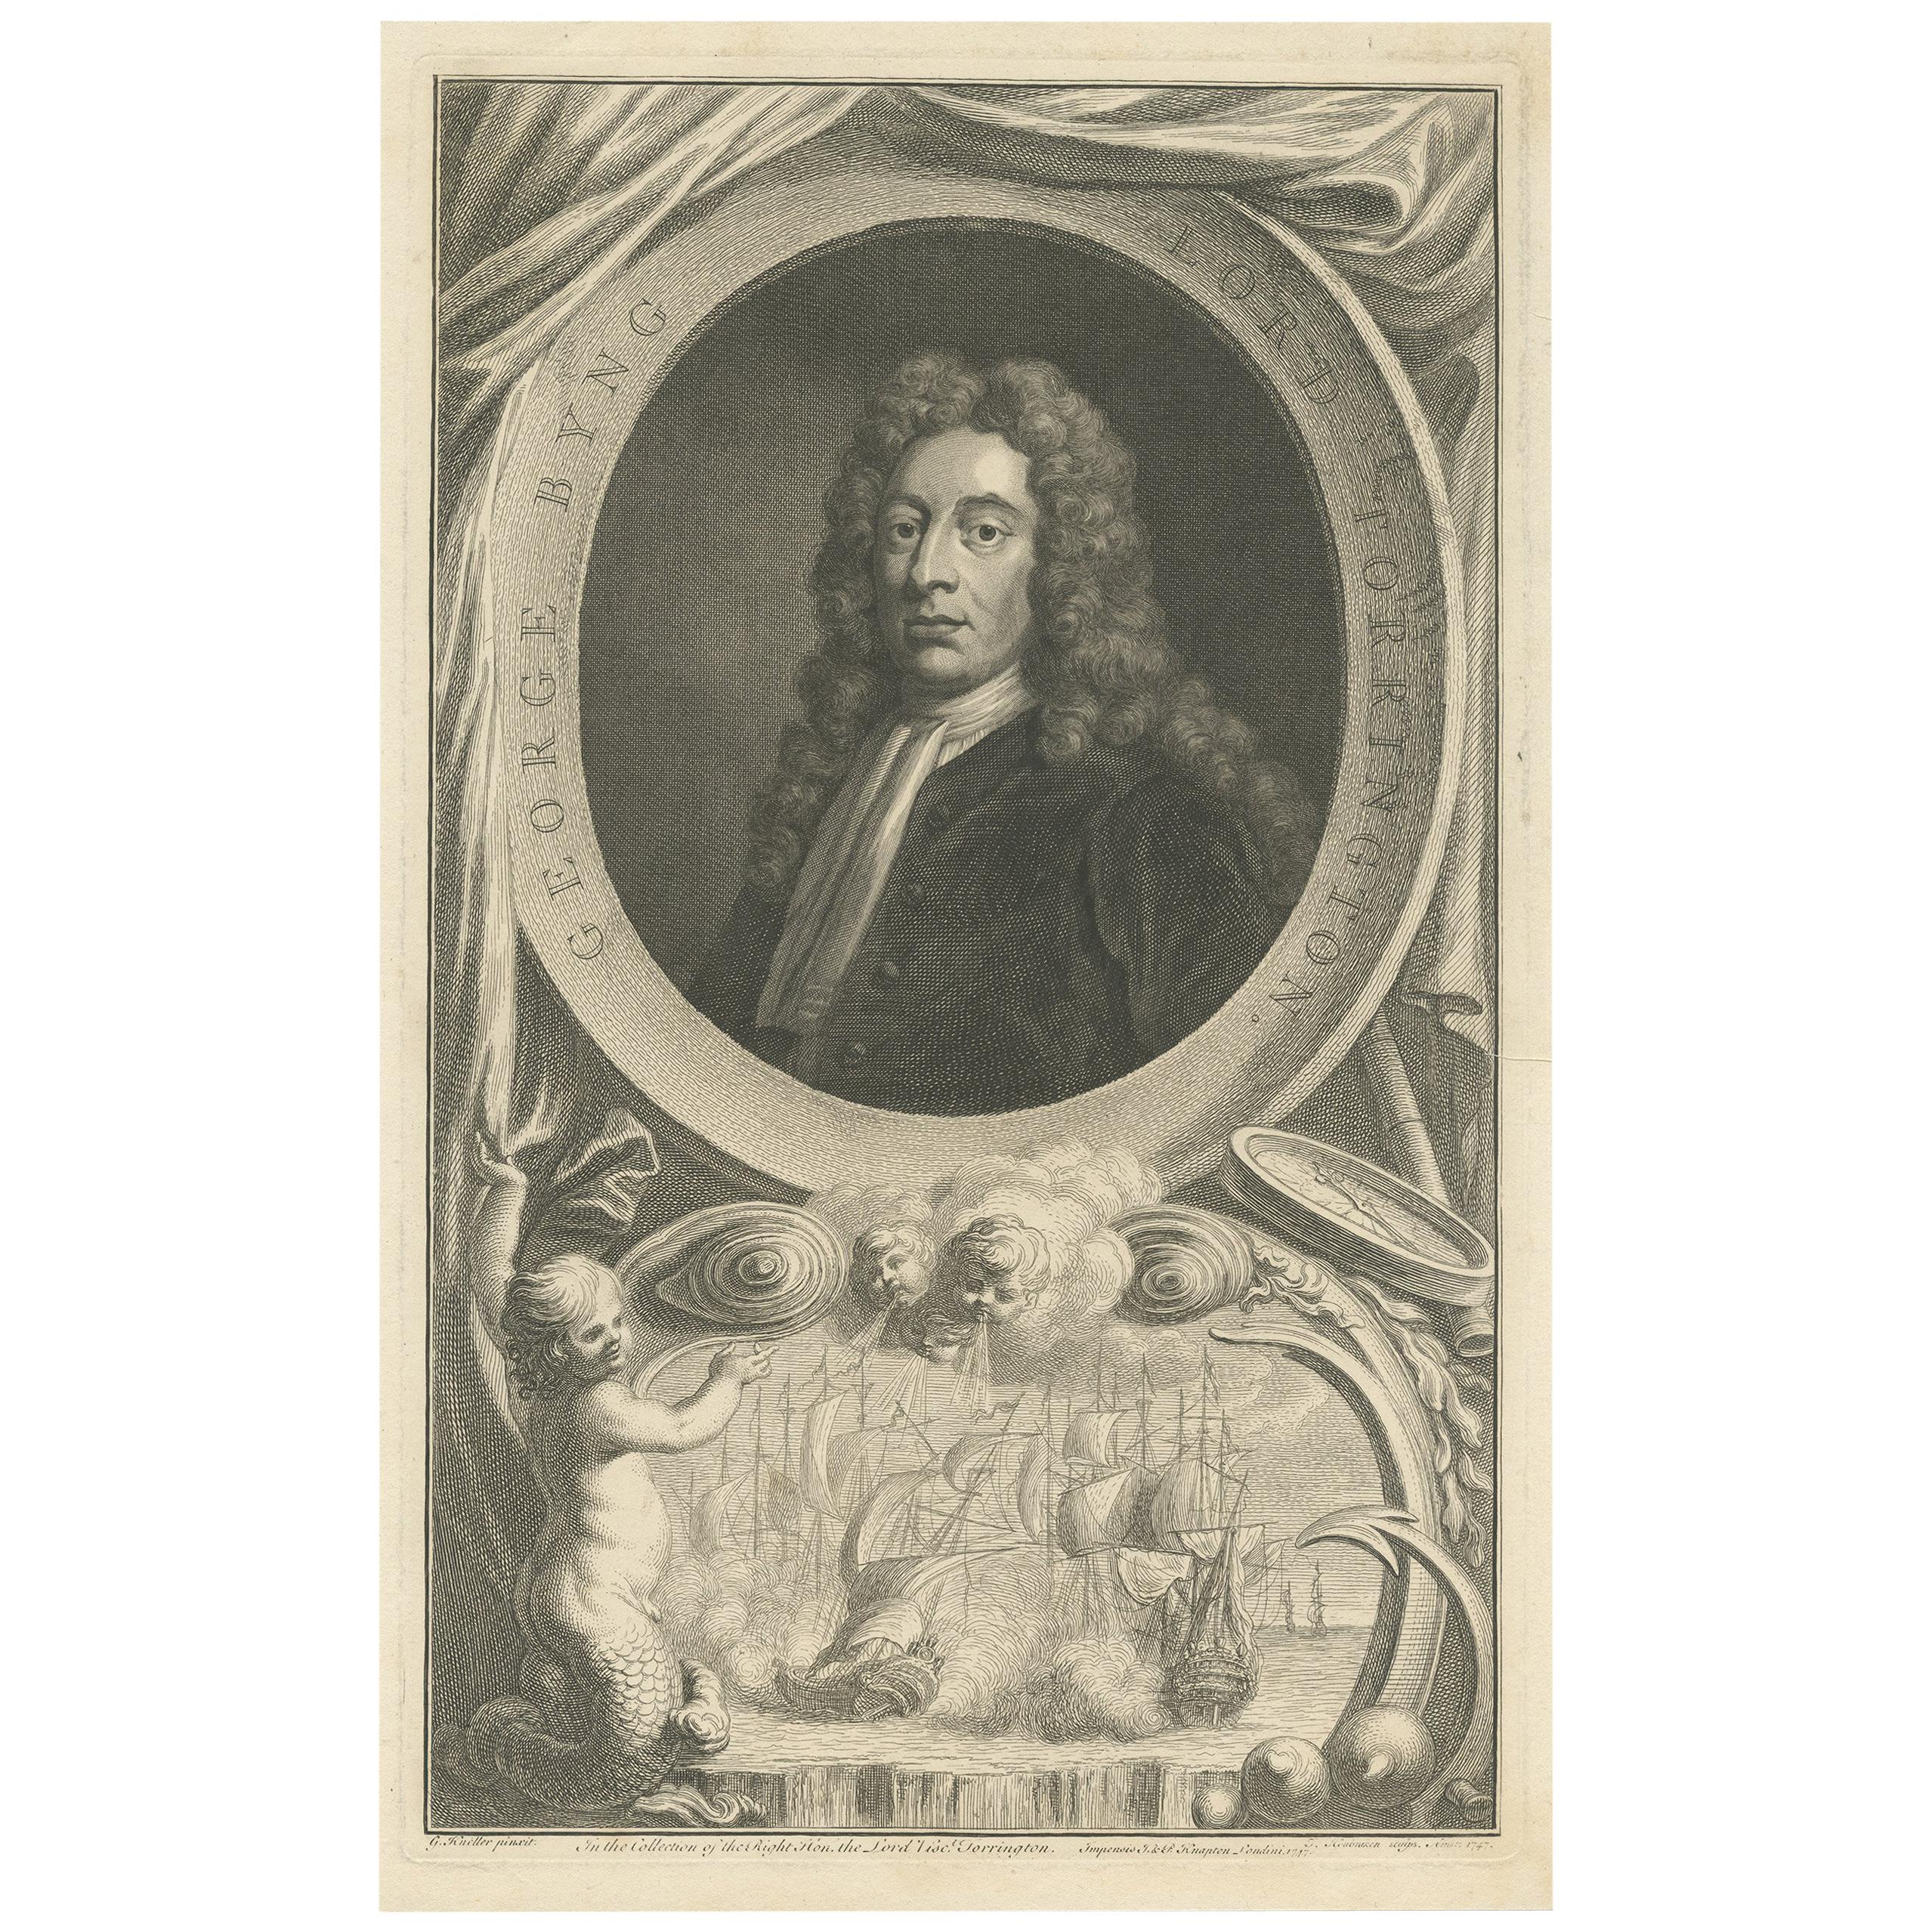 Antikes Porträt von George Byng von J. Houbraken, 1747